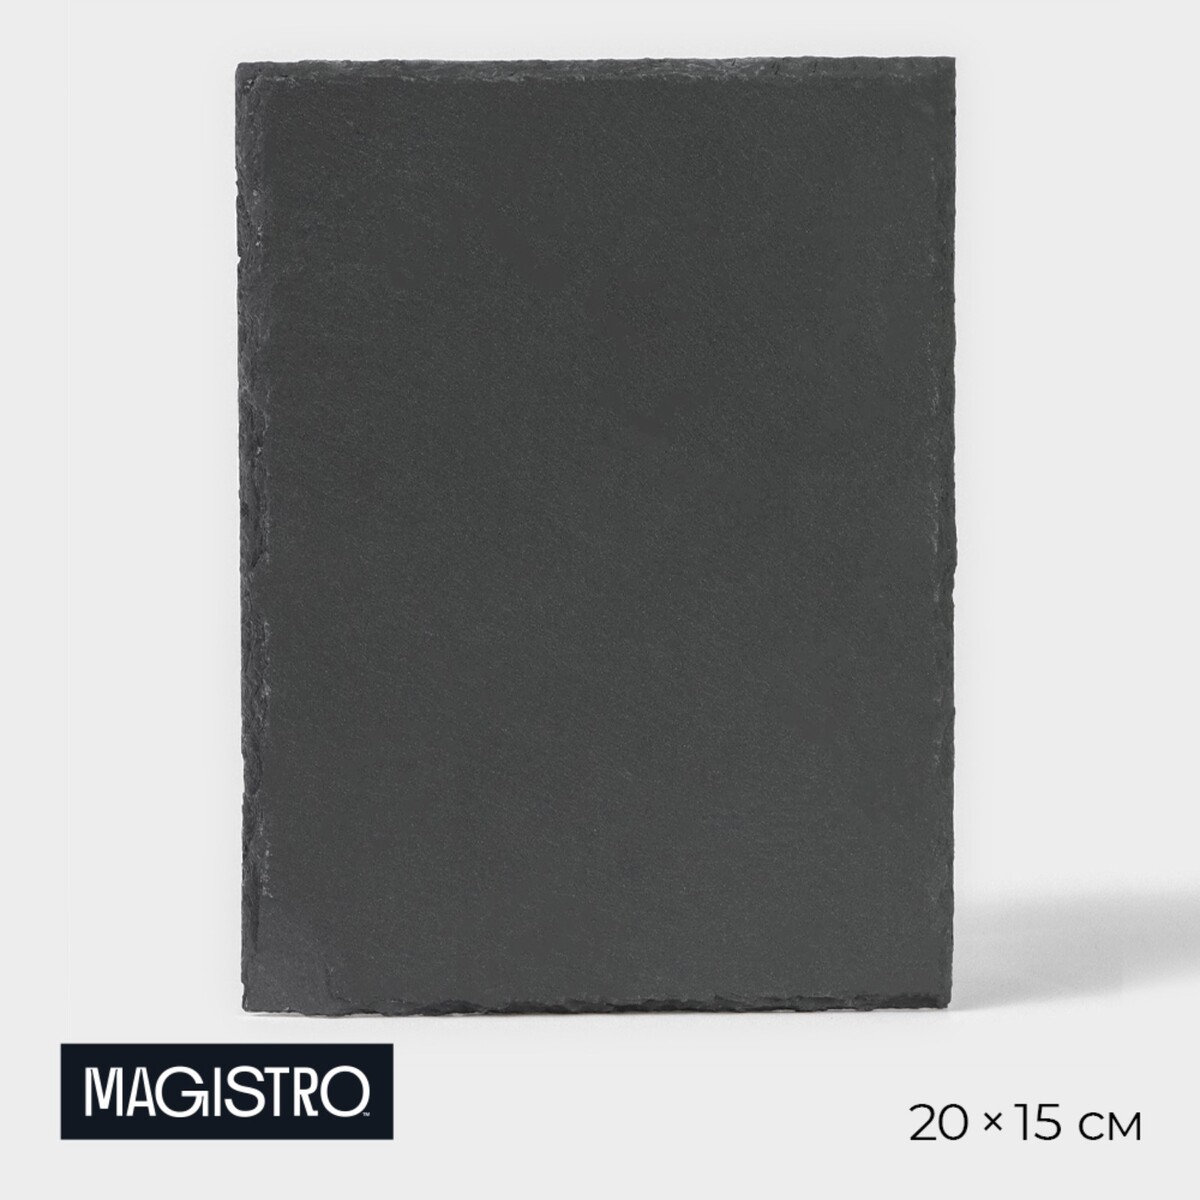 Доска для подачи из сланца magistro valley, 20×15 см доска для подачи magistro valley из сланца 21×20 см в виде сердца